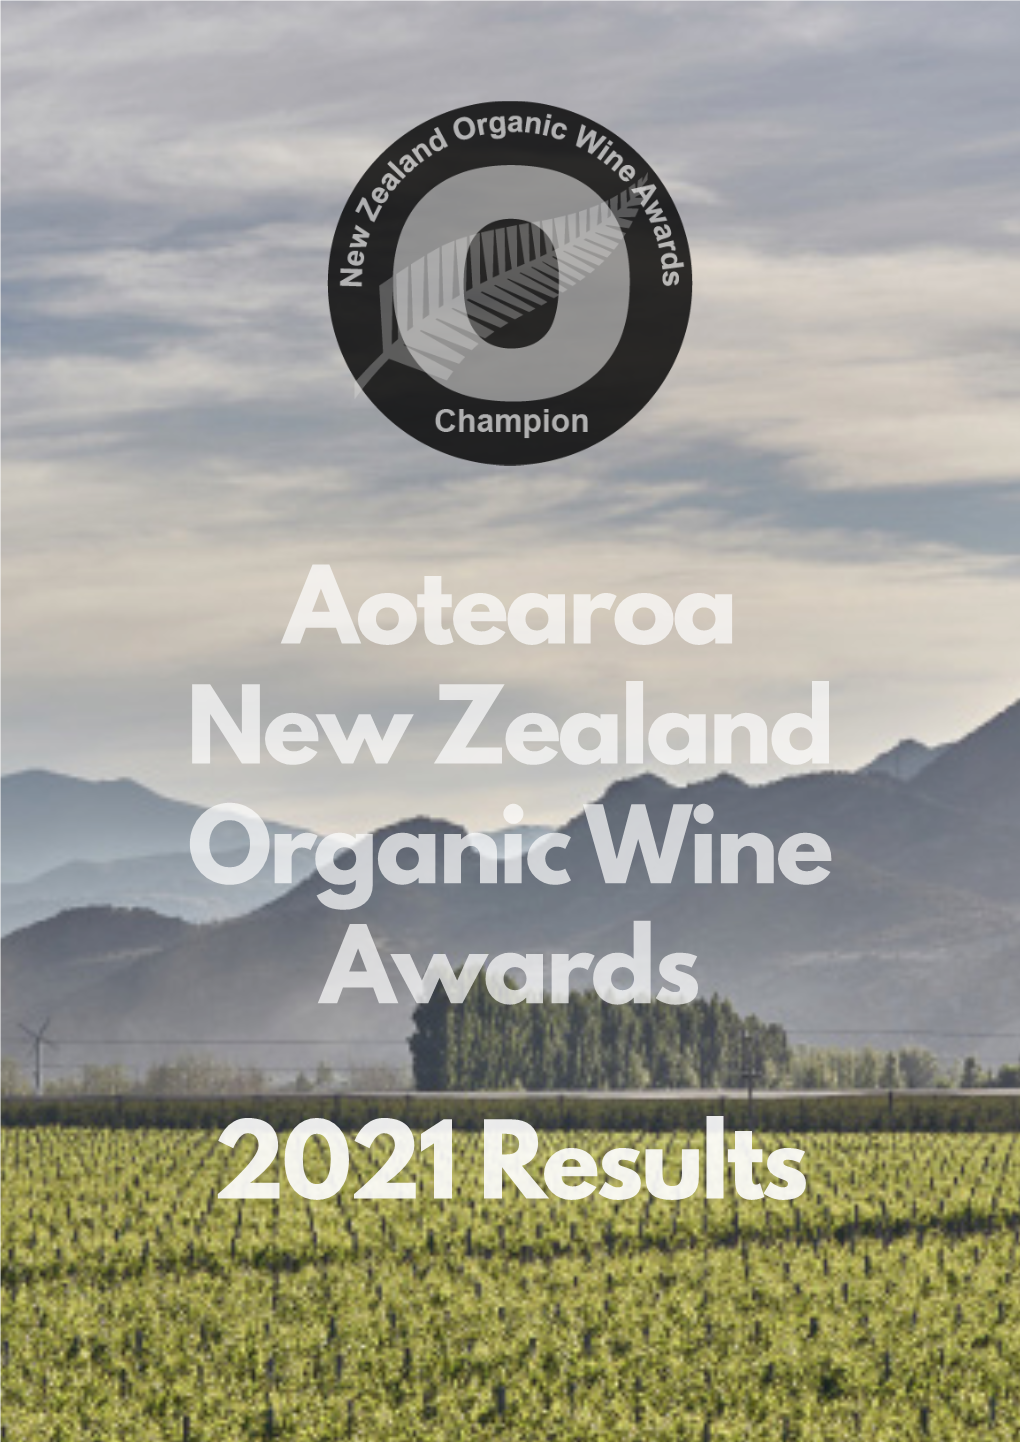 Aotearoa New Zealand Organic Wine Awards 2021 Results